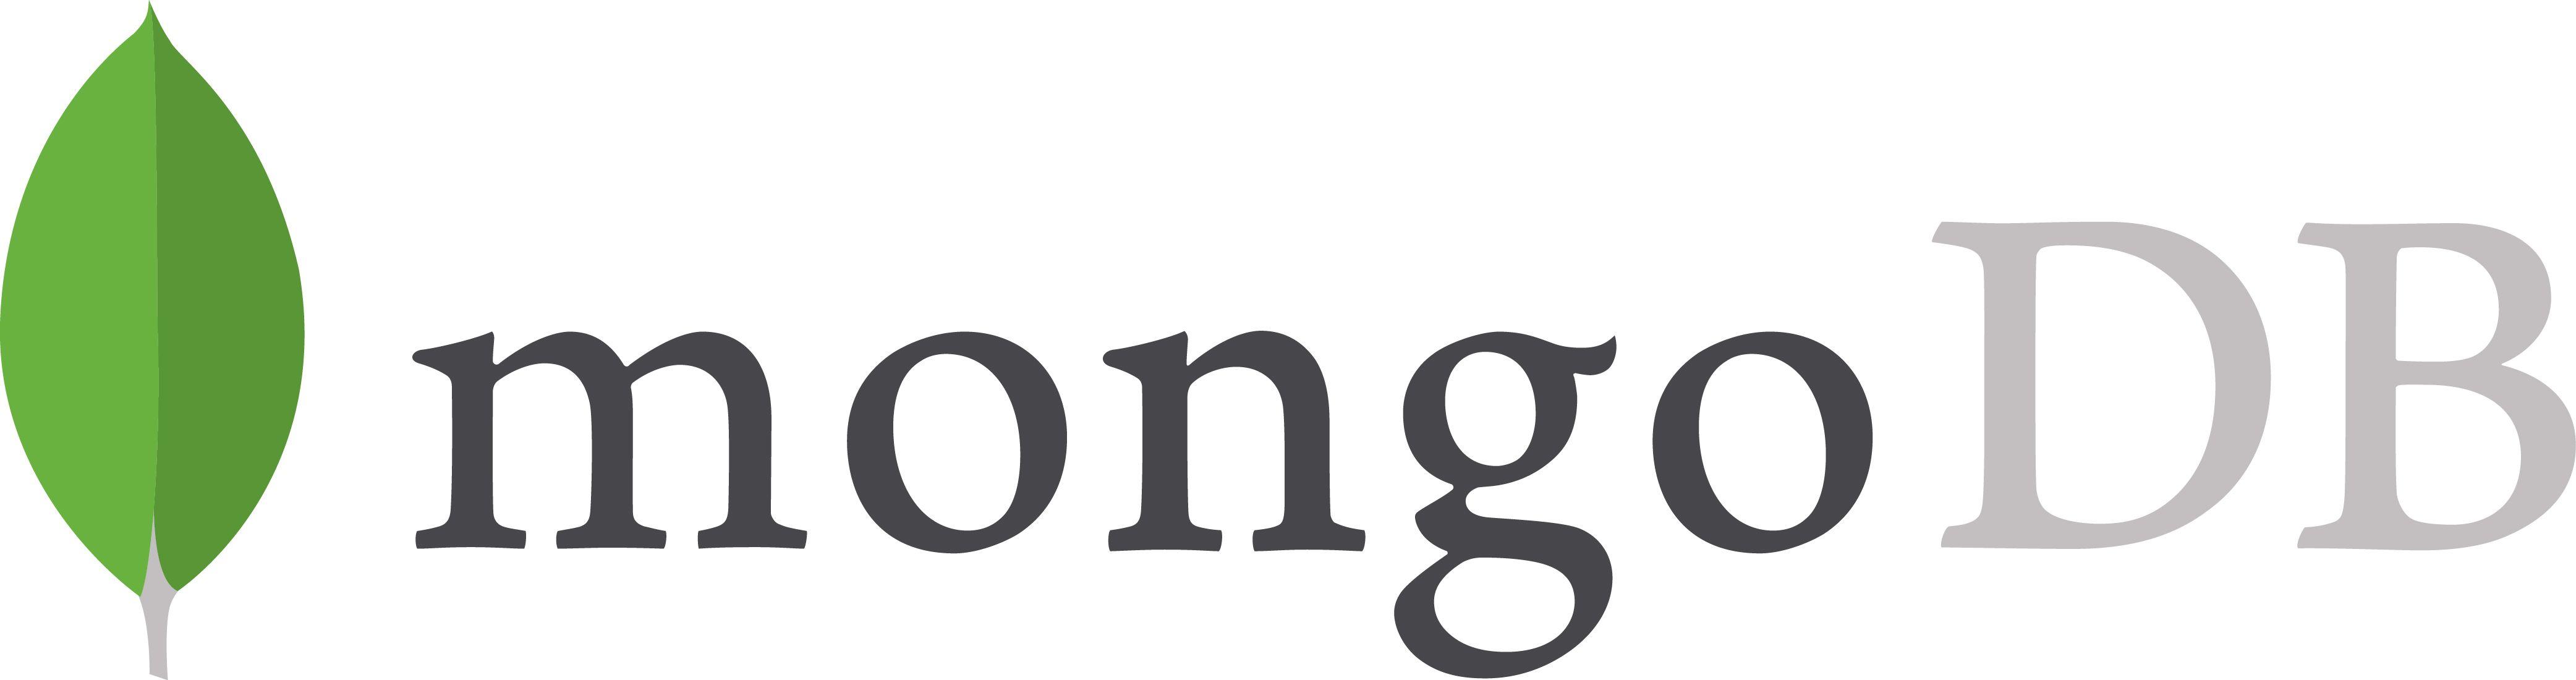 MongoDB Logo - Brand Resources | MongoDB